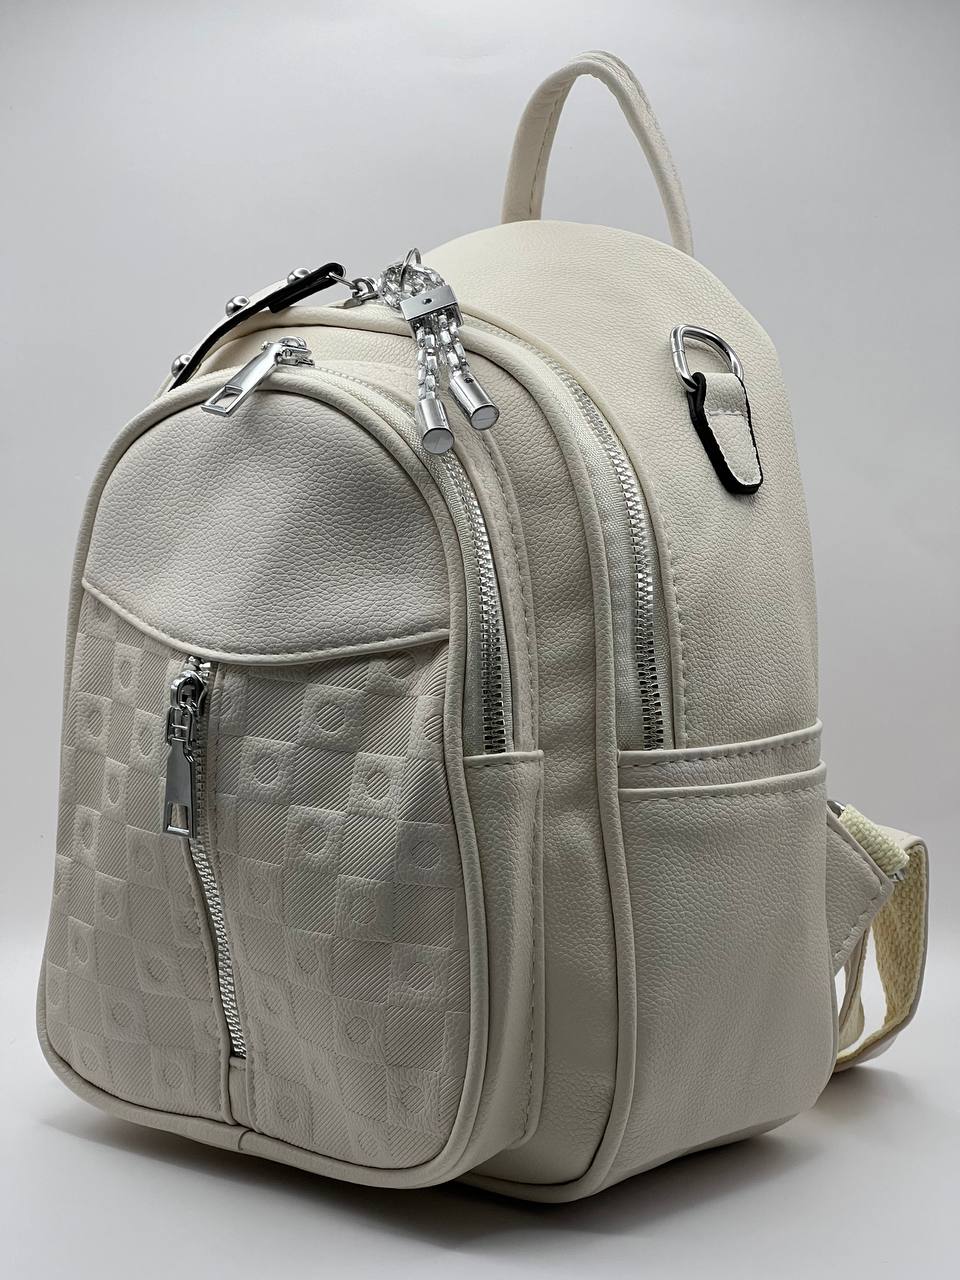 Сумка-рюкзак женская SunGold Р-80101 молочная, 27х22х12 см